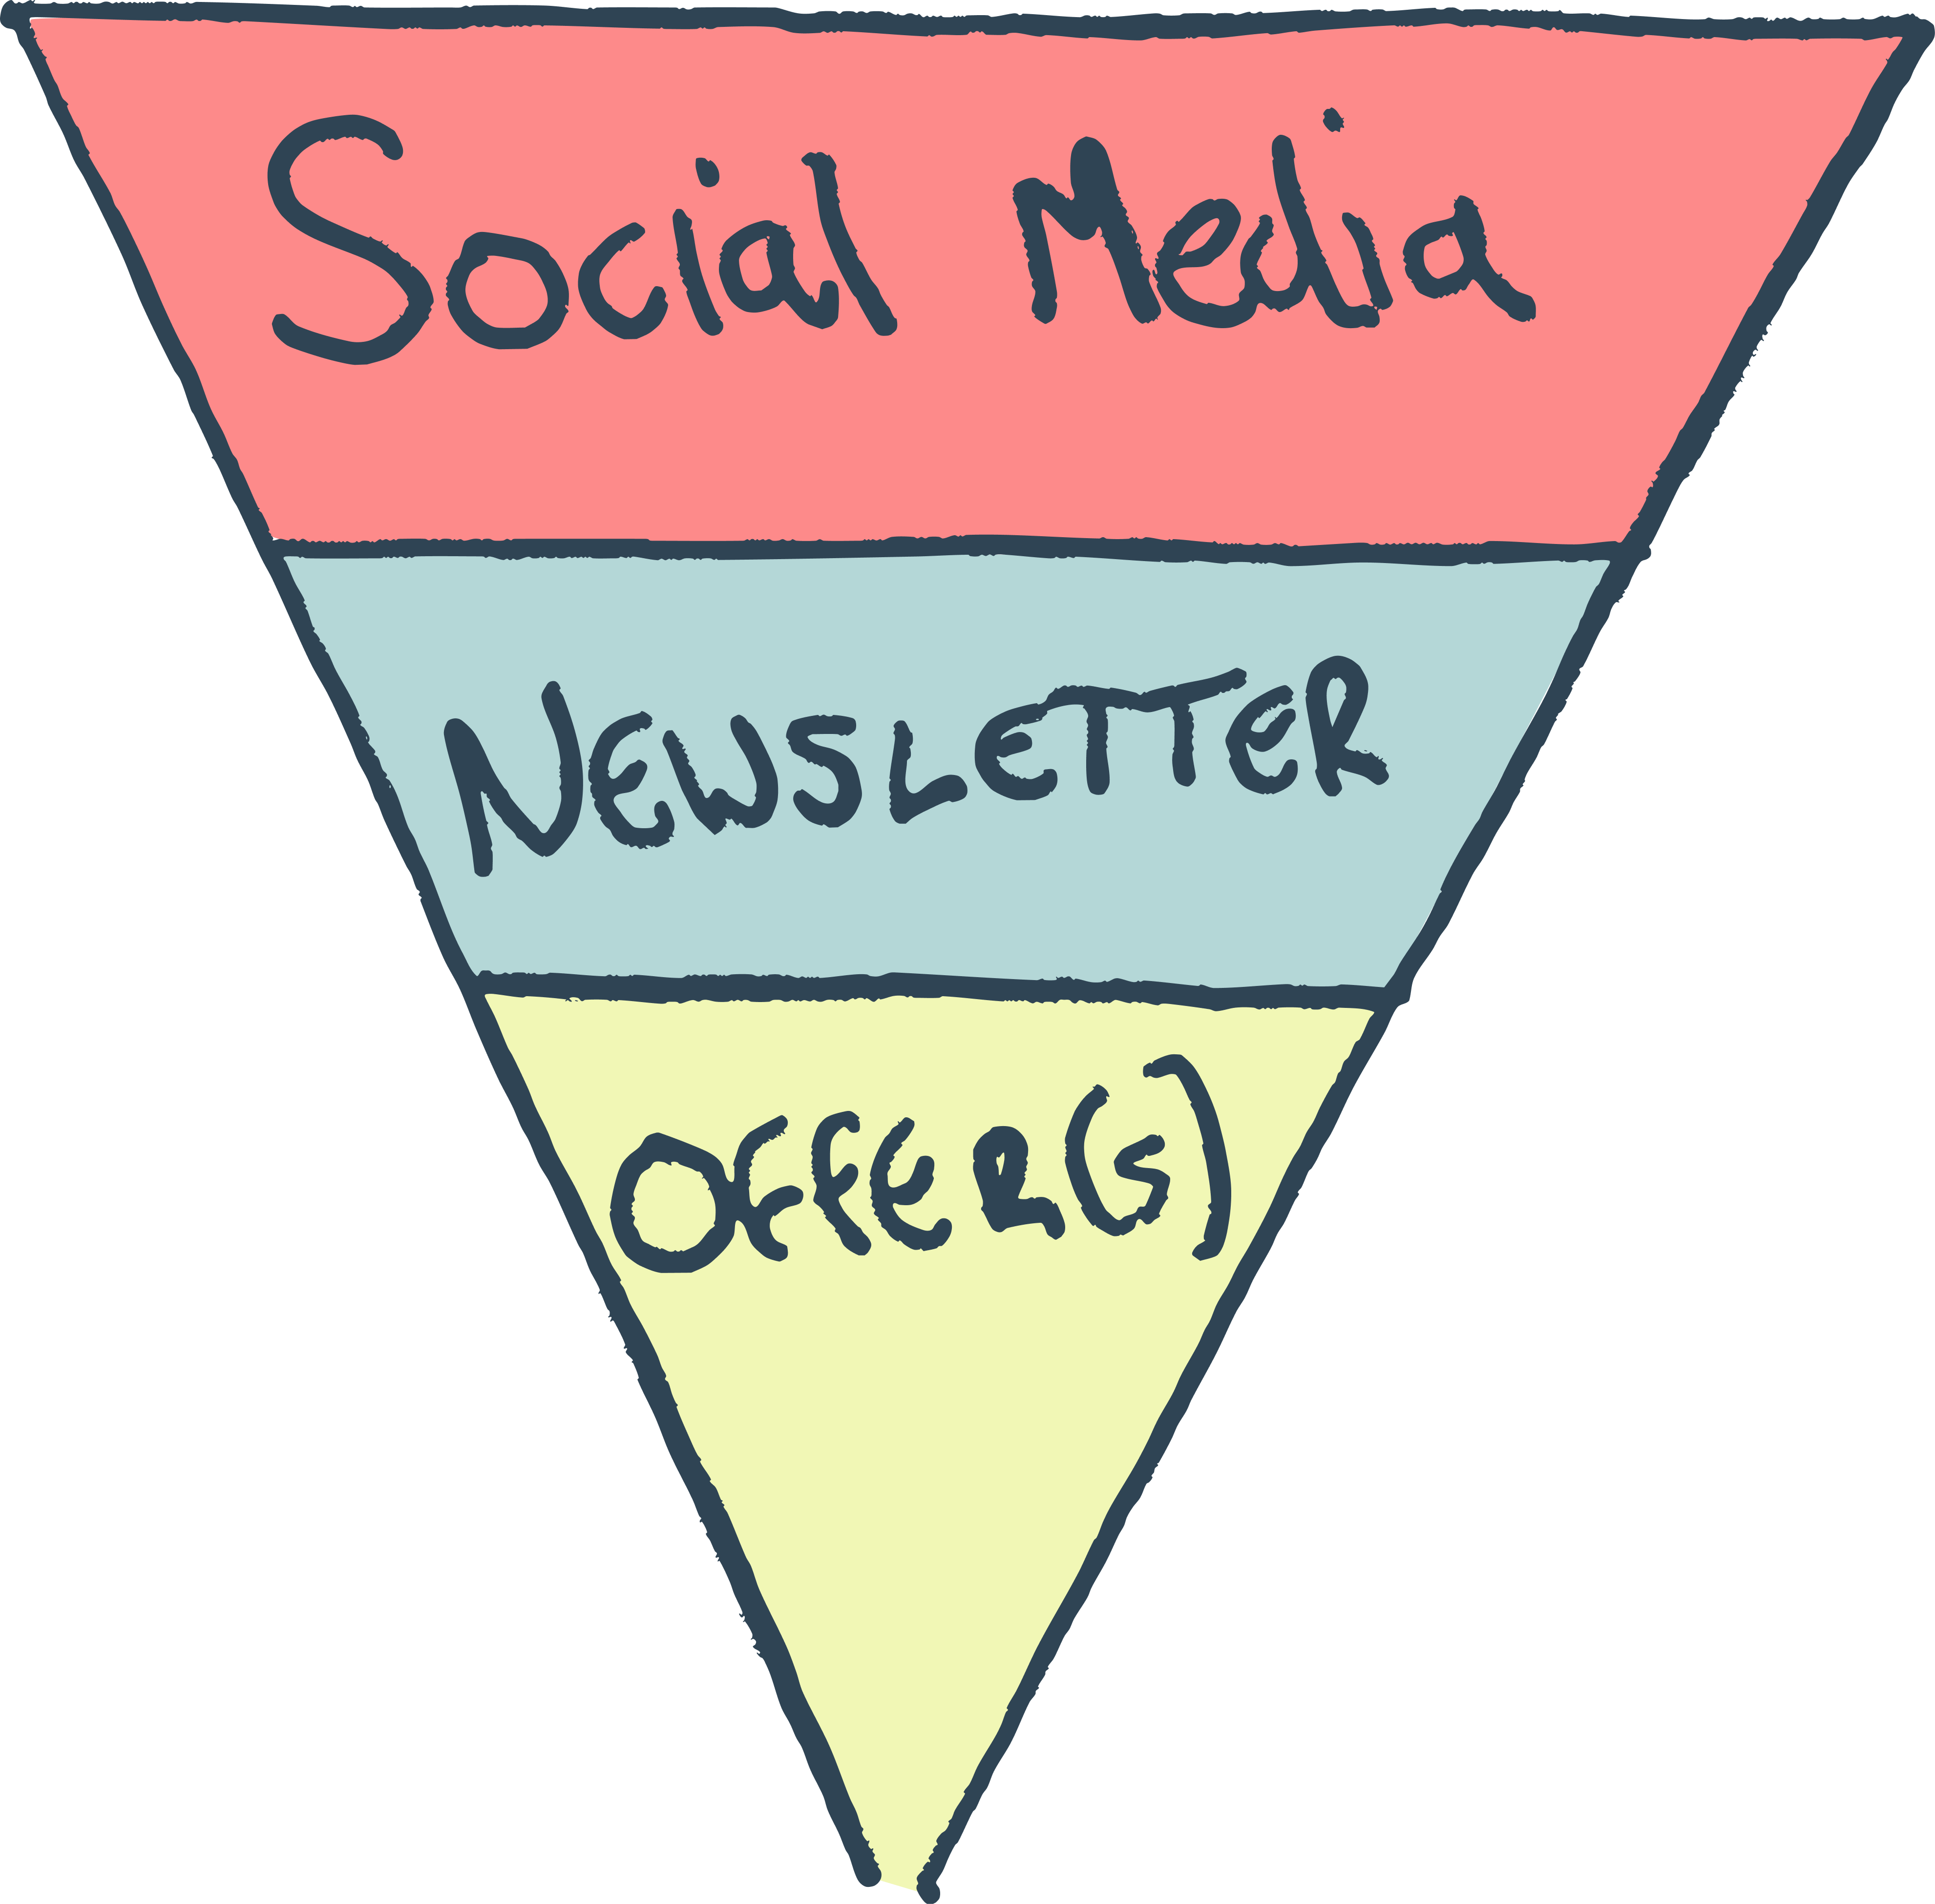 SOCIAL MEDIA - NEWSLETTER - OFFER(S)